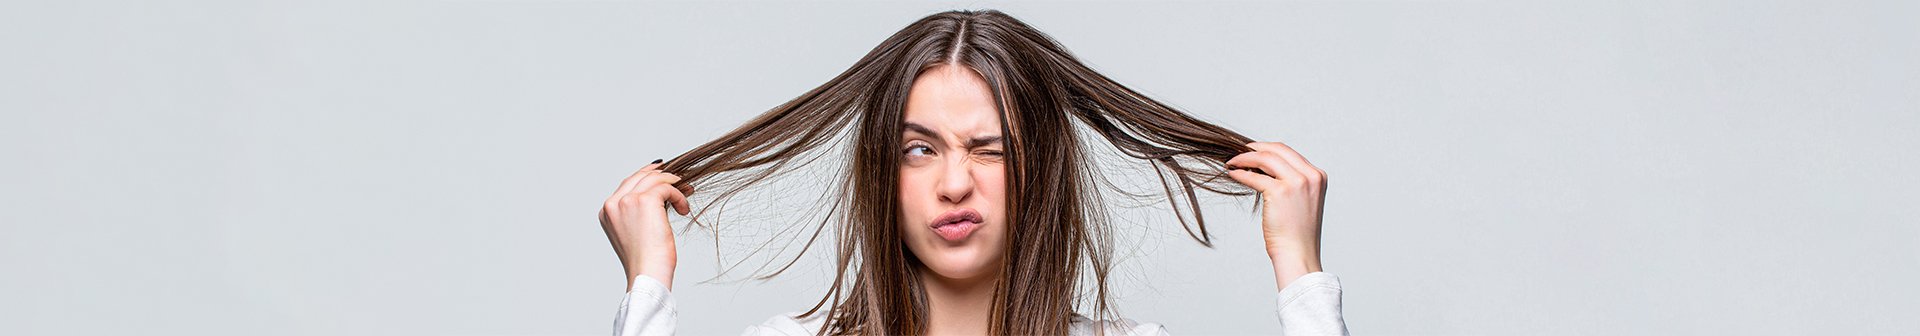 HAIRCARE GAR Come idratare i capelli secchi e disidratati  consigli e prodotti nuovoarticolo